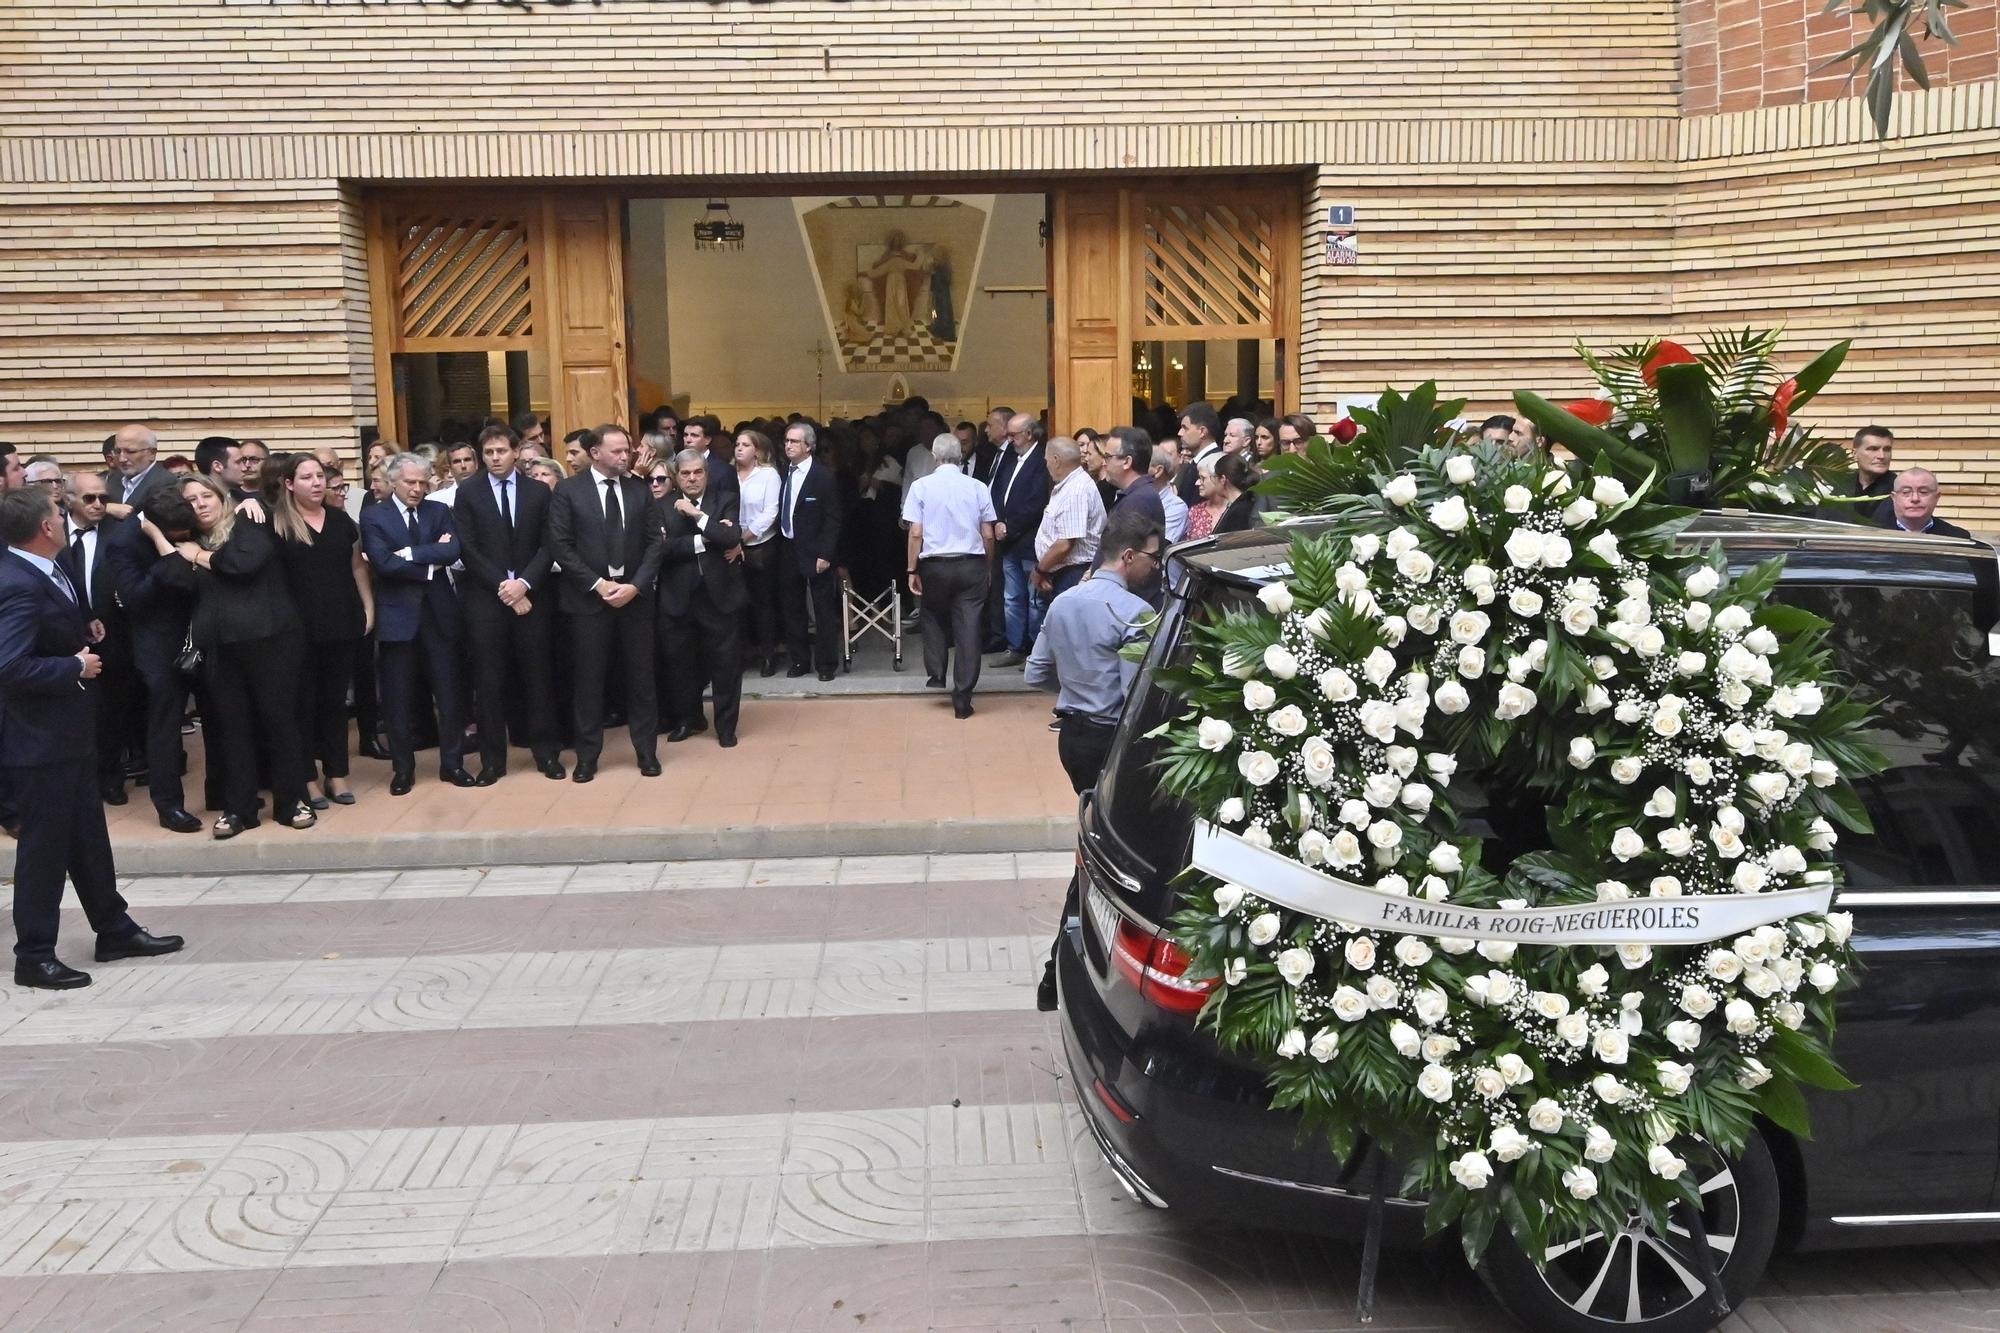 Galería | Las imágenes del último adiós a Llaneza, vicepresidente del Villarreal CF